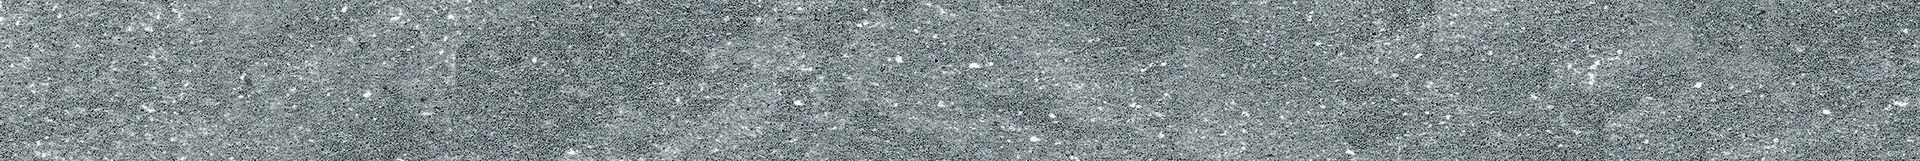 Плитка из керамогранита матовая Italon Дженезис 7.2x60 серый (610130002155) плитка из керамогранита матовая italon дженезис 7 2x60 серый 610130002154